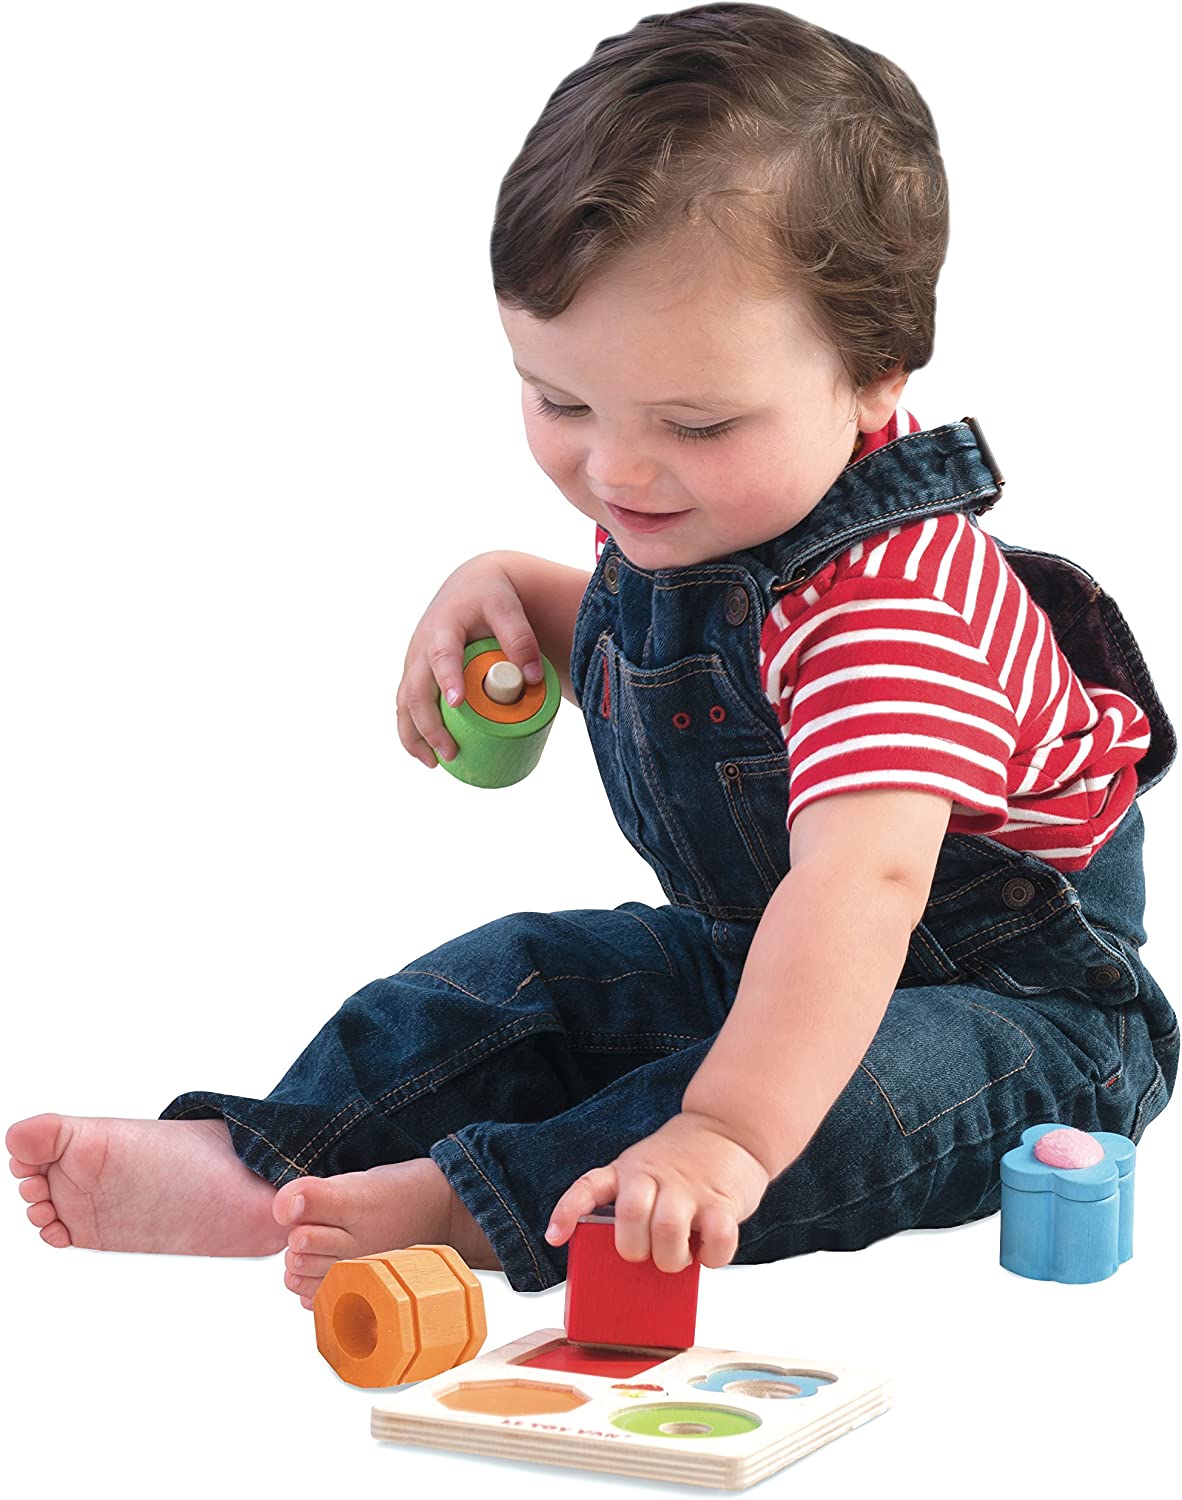 Le Toy Van - Petilou Wooden Tray 4-Piece Multi-Sensory Montessori Toy